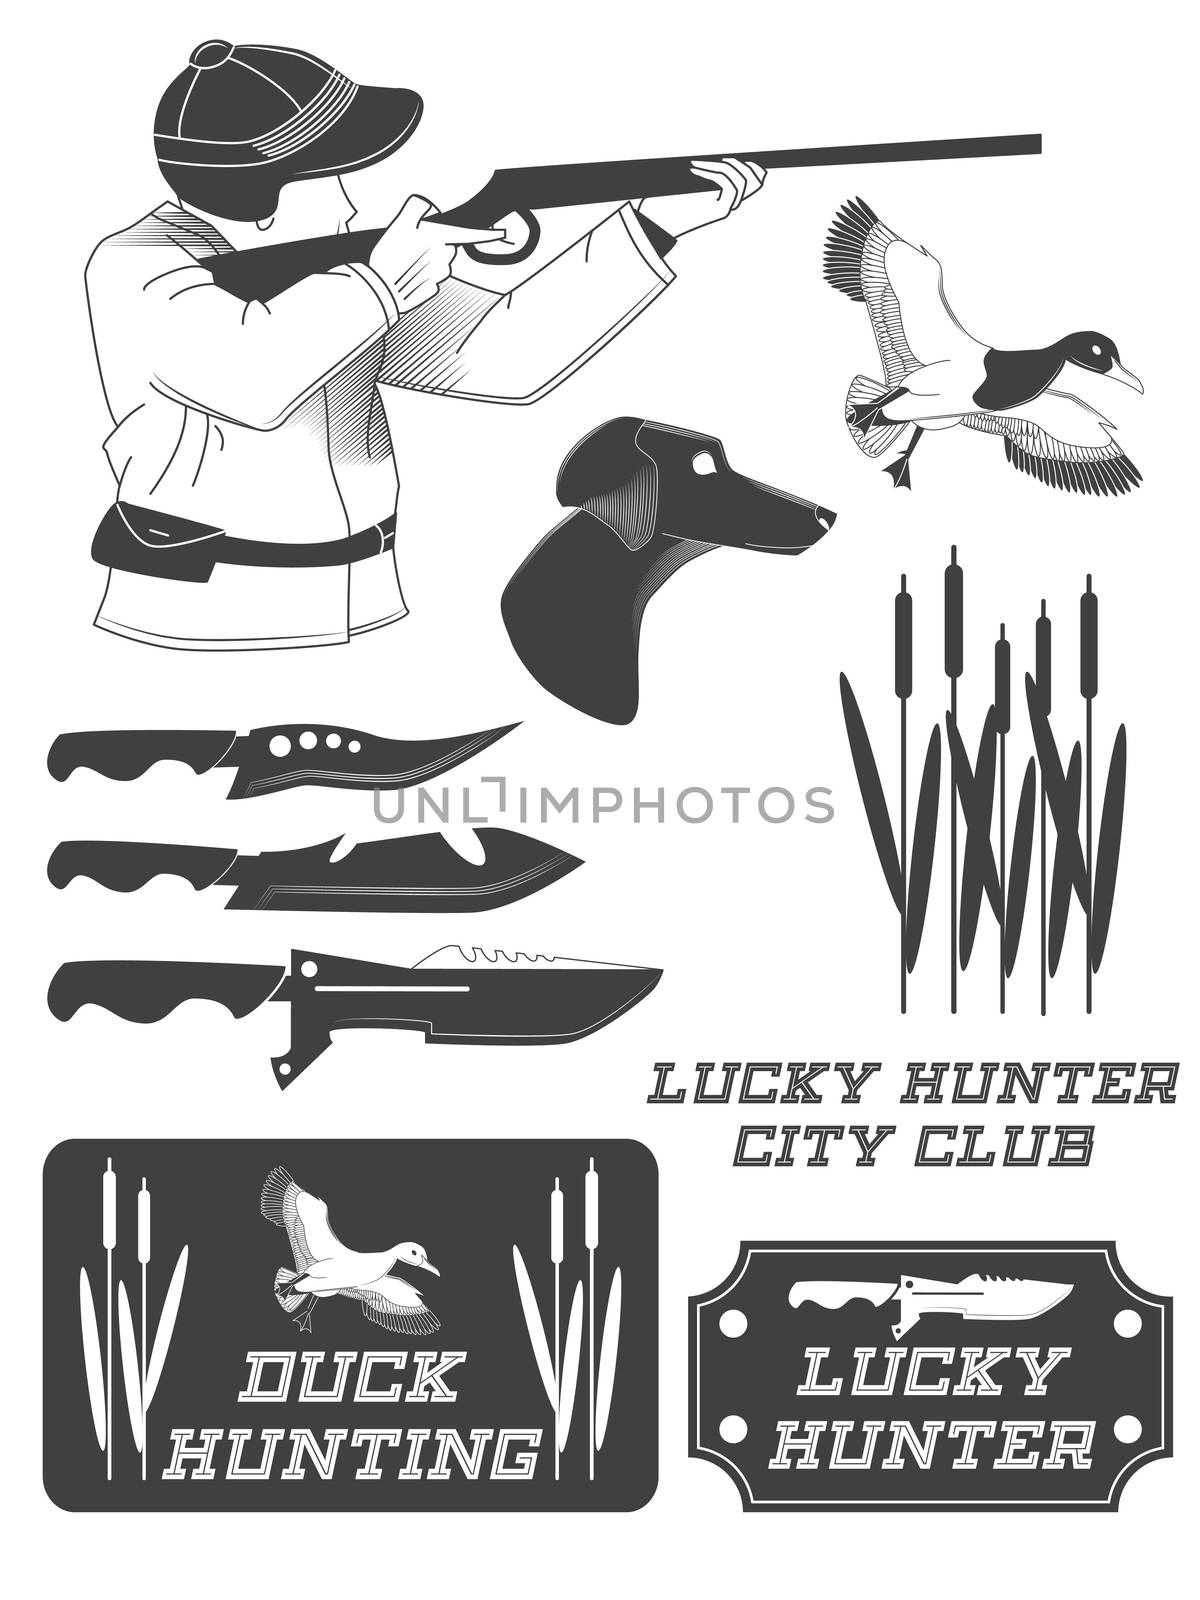 African hunter safari labels, emblems and design elements. illustration